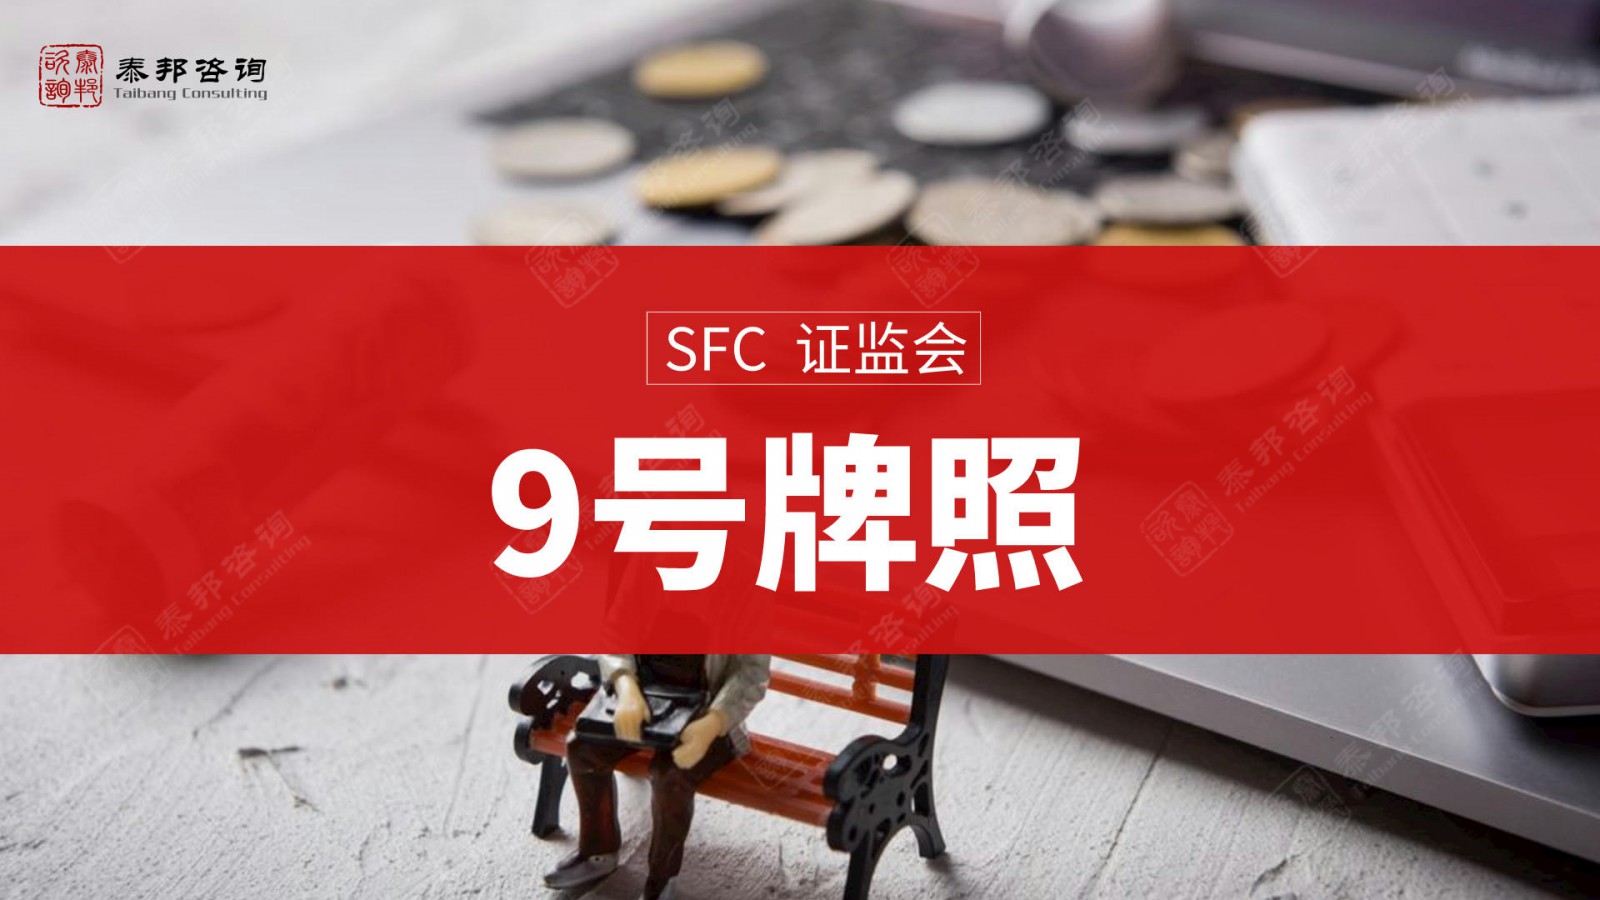 申请代办香港149号金融牌照常见问题